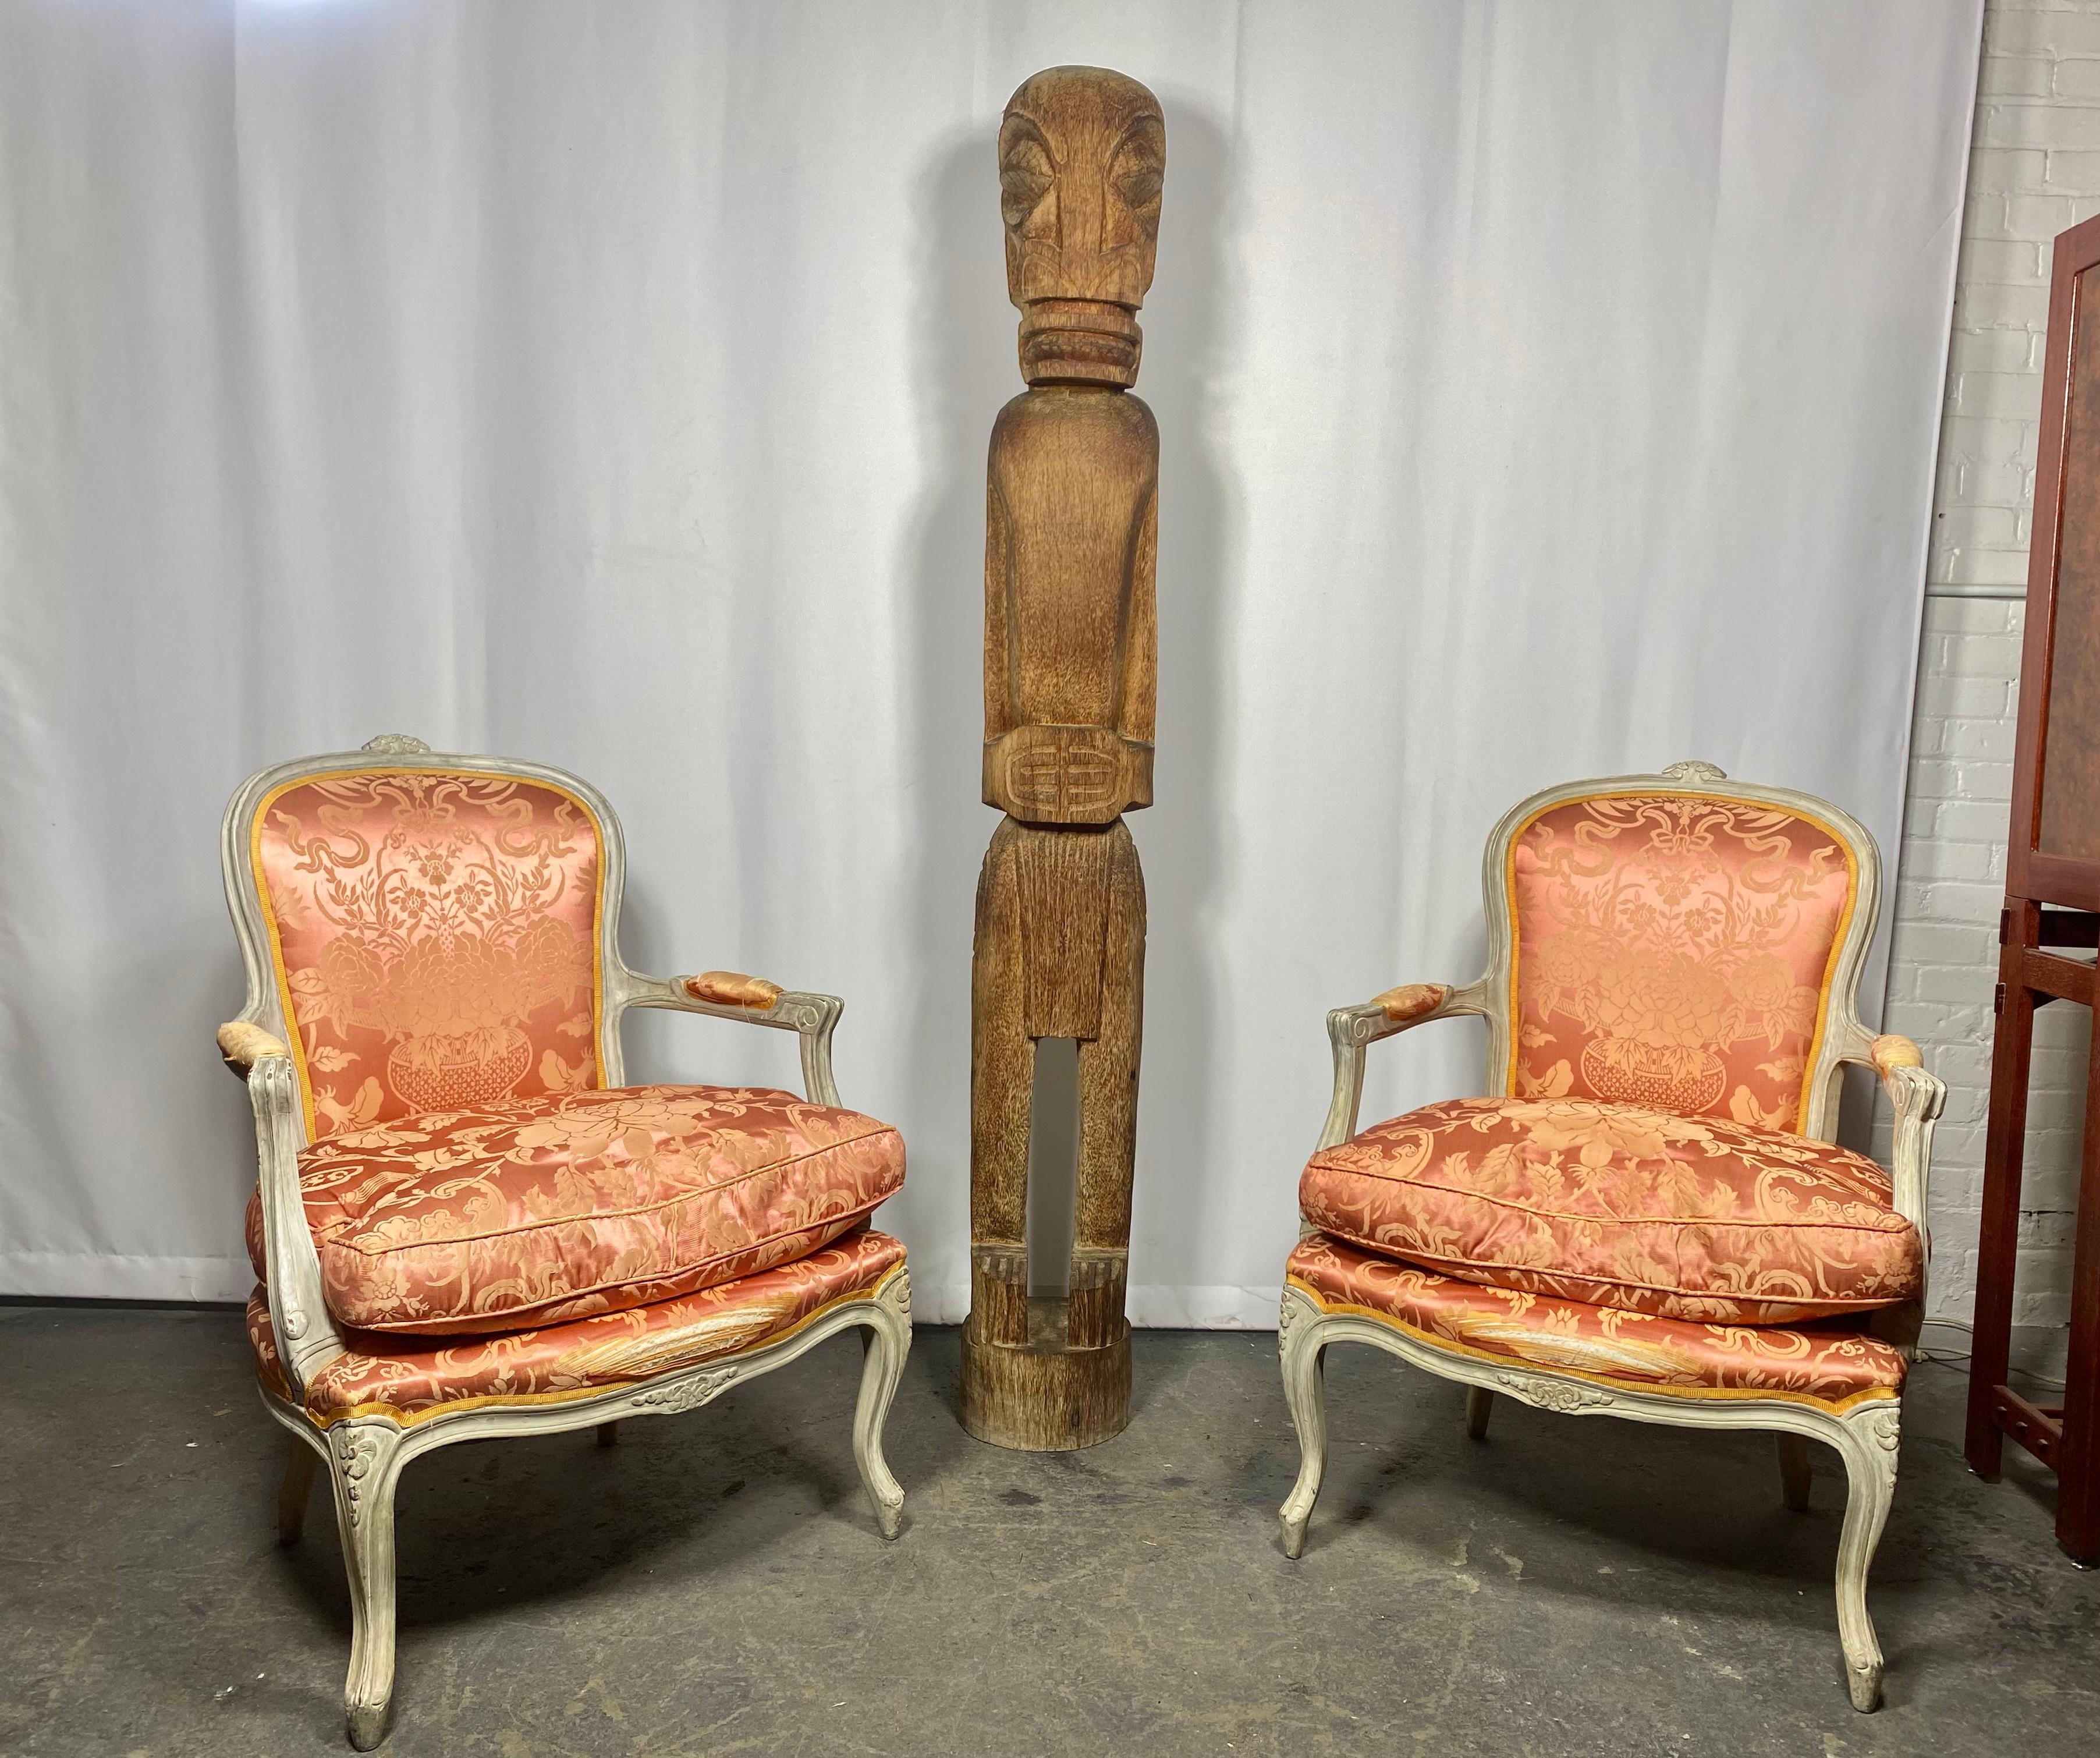 Zwei prächtige geschnitzte Bergsteigerstühle aus der Louis XV-Zeit. Jeder Stuhl verfügt über einen handbemalten Holzrahmen, eine geschwungene Rückenlehne und ein geschnitztes Blumenwappen. Diese Rückenlehne geht nahtlos in die offenen, geschwungenen